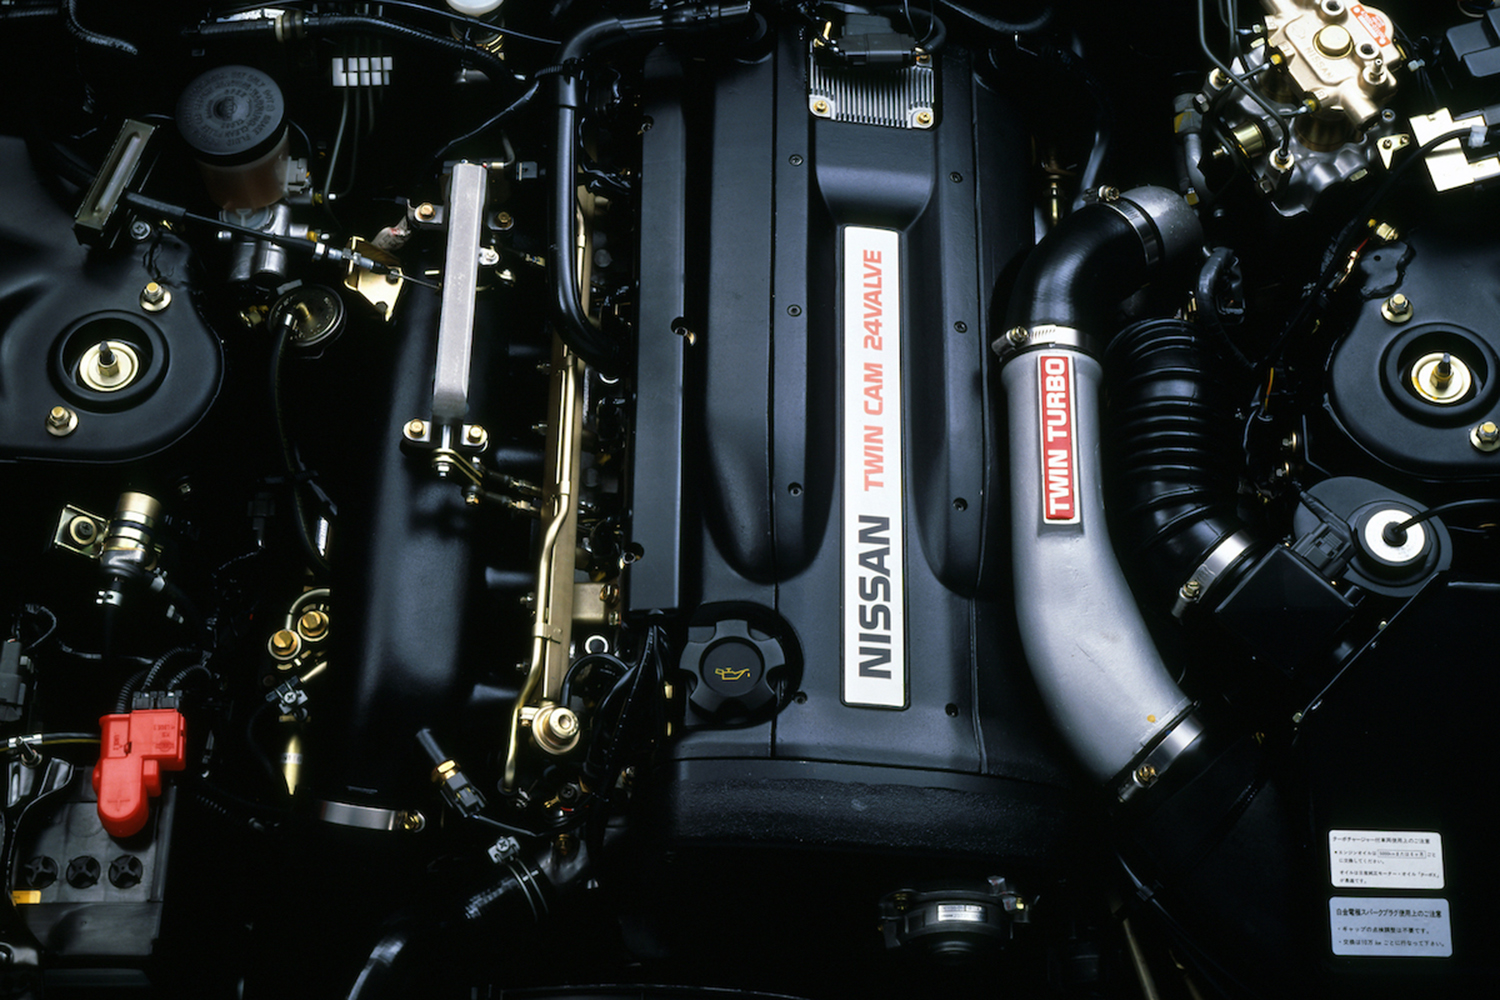 RB26DETTエンジンの写真